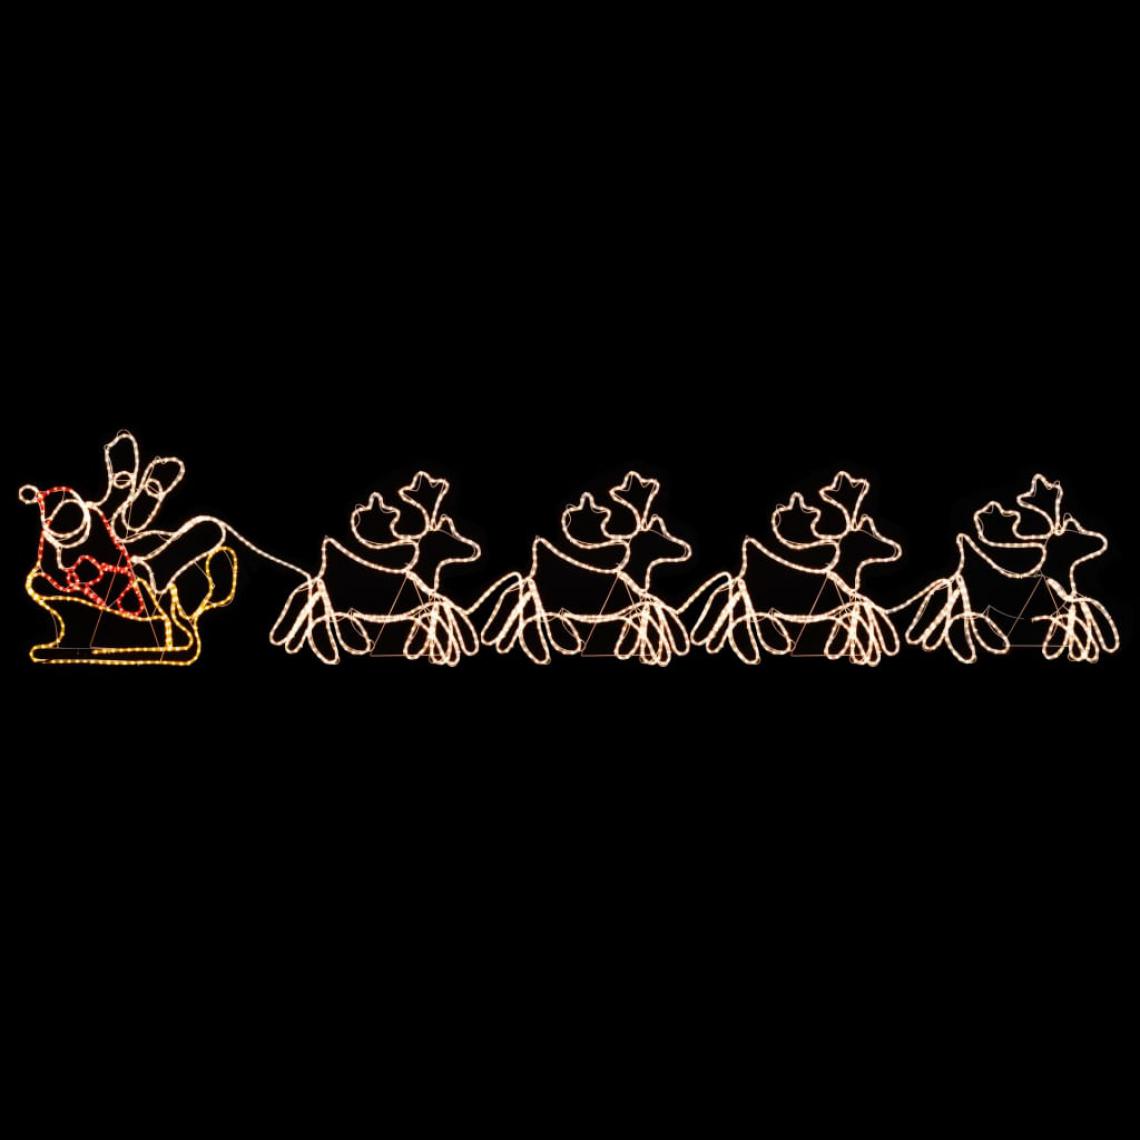 Icaverne - Contemporain Décorations de Noël et saisonnières categorie Jérusalem Cordon lumineux de Noël 4 rennes et traîneau 1548 LED 500x80 cm - Décorations de Noël